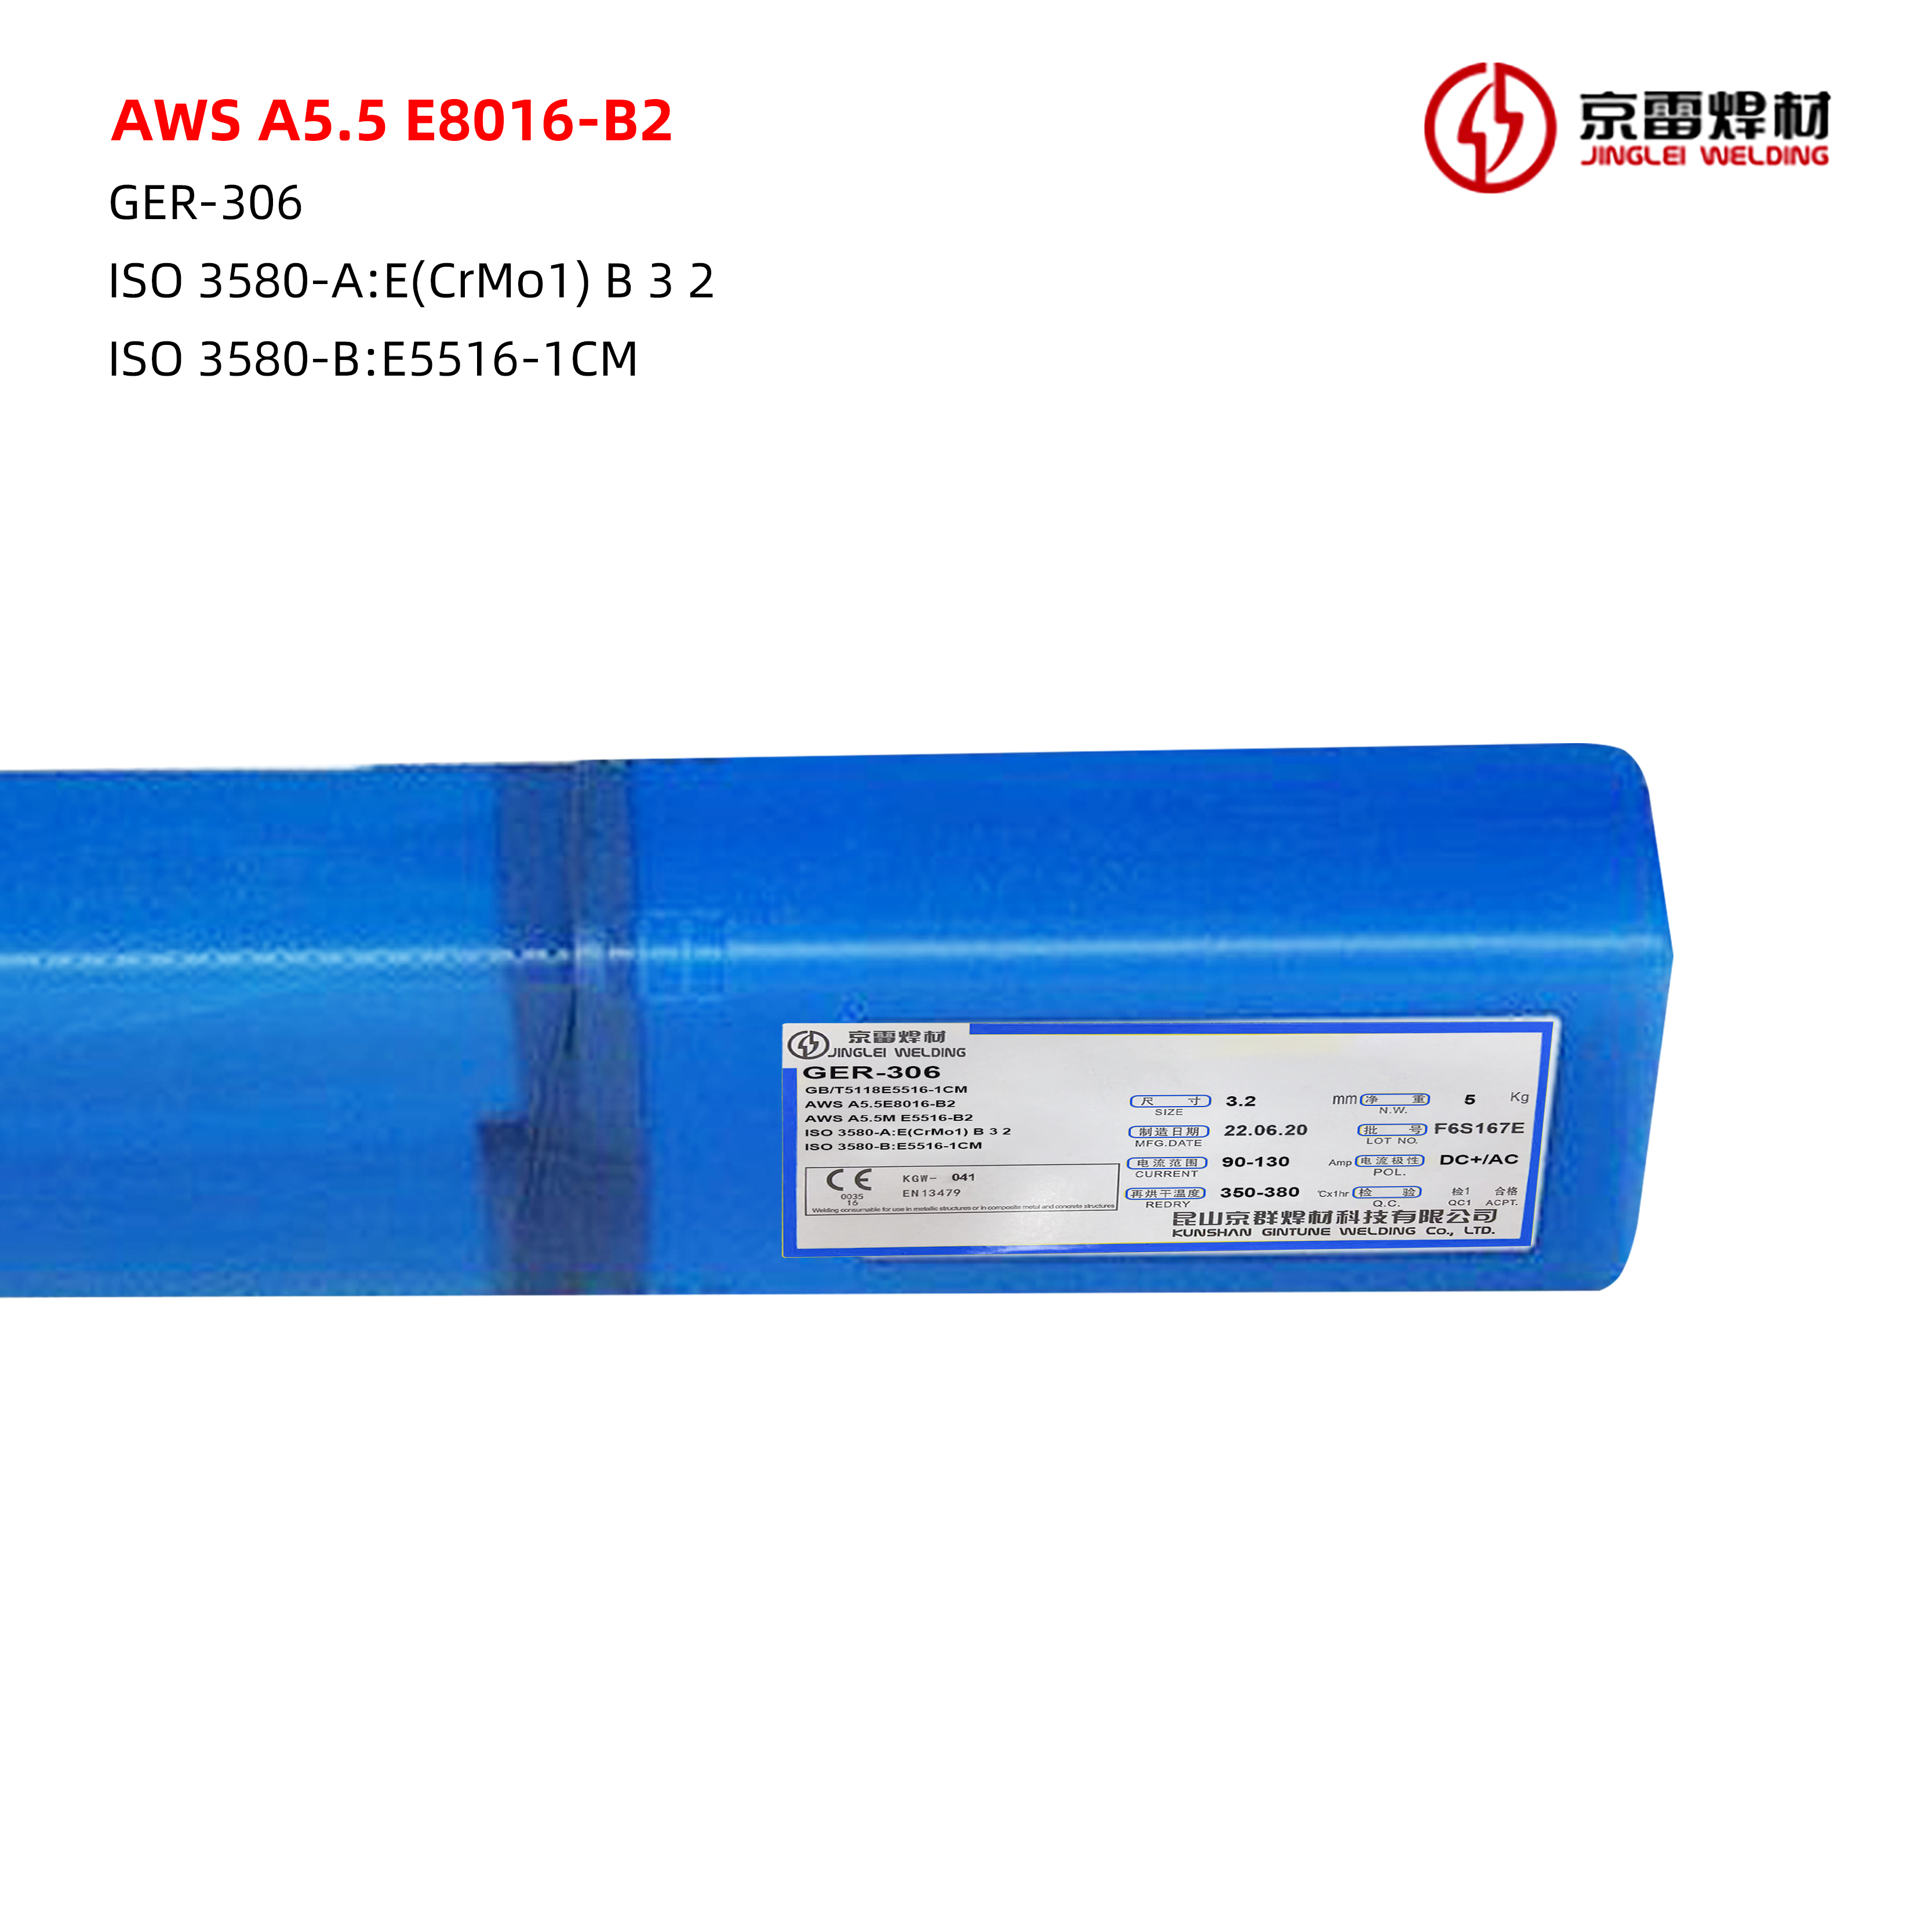 AWS A5.5 E8016-B2 01